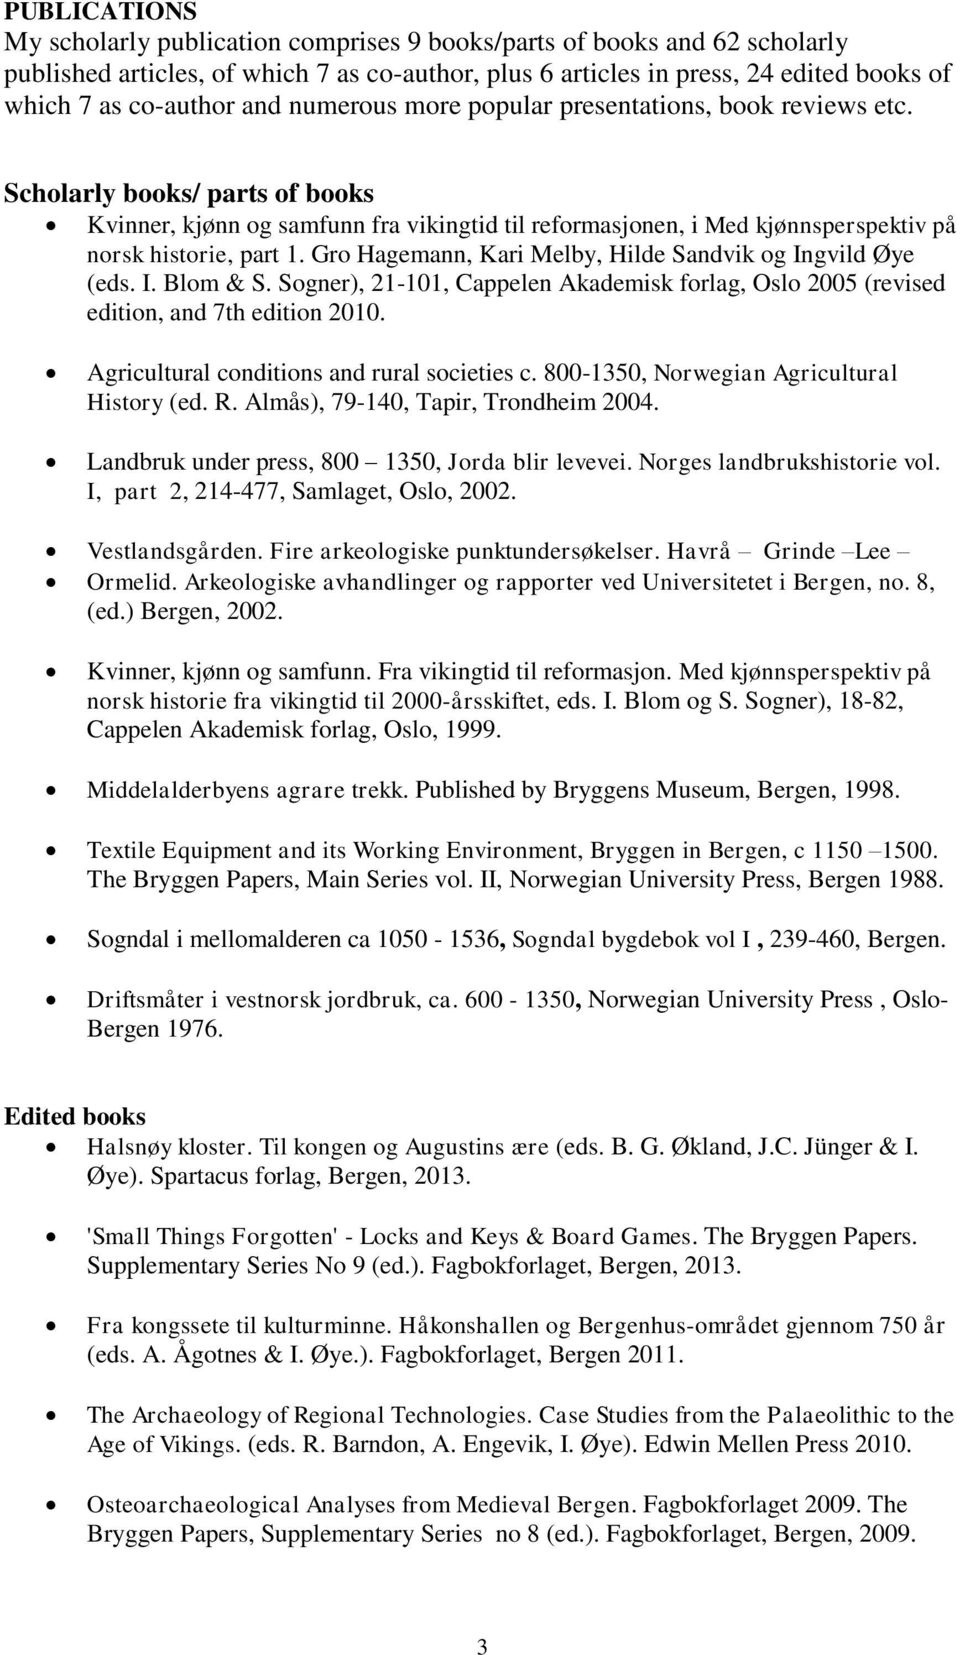 Gro Hagemann, Kari Melby, Hilde Sandvik og Ingvild Øye (eds. I. Blom & S. Sogner), 21-101, Cappelen Akademisk forlag, Oslo 2005 (revised edition, and 7th edition 2010.